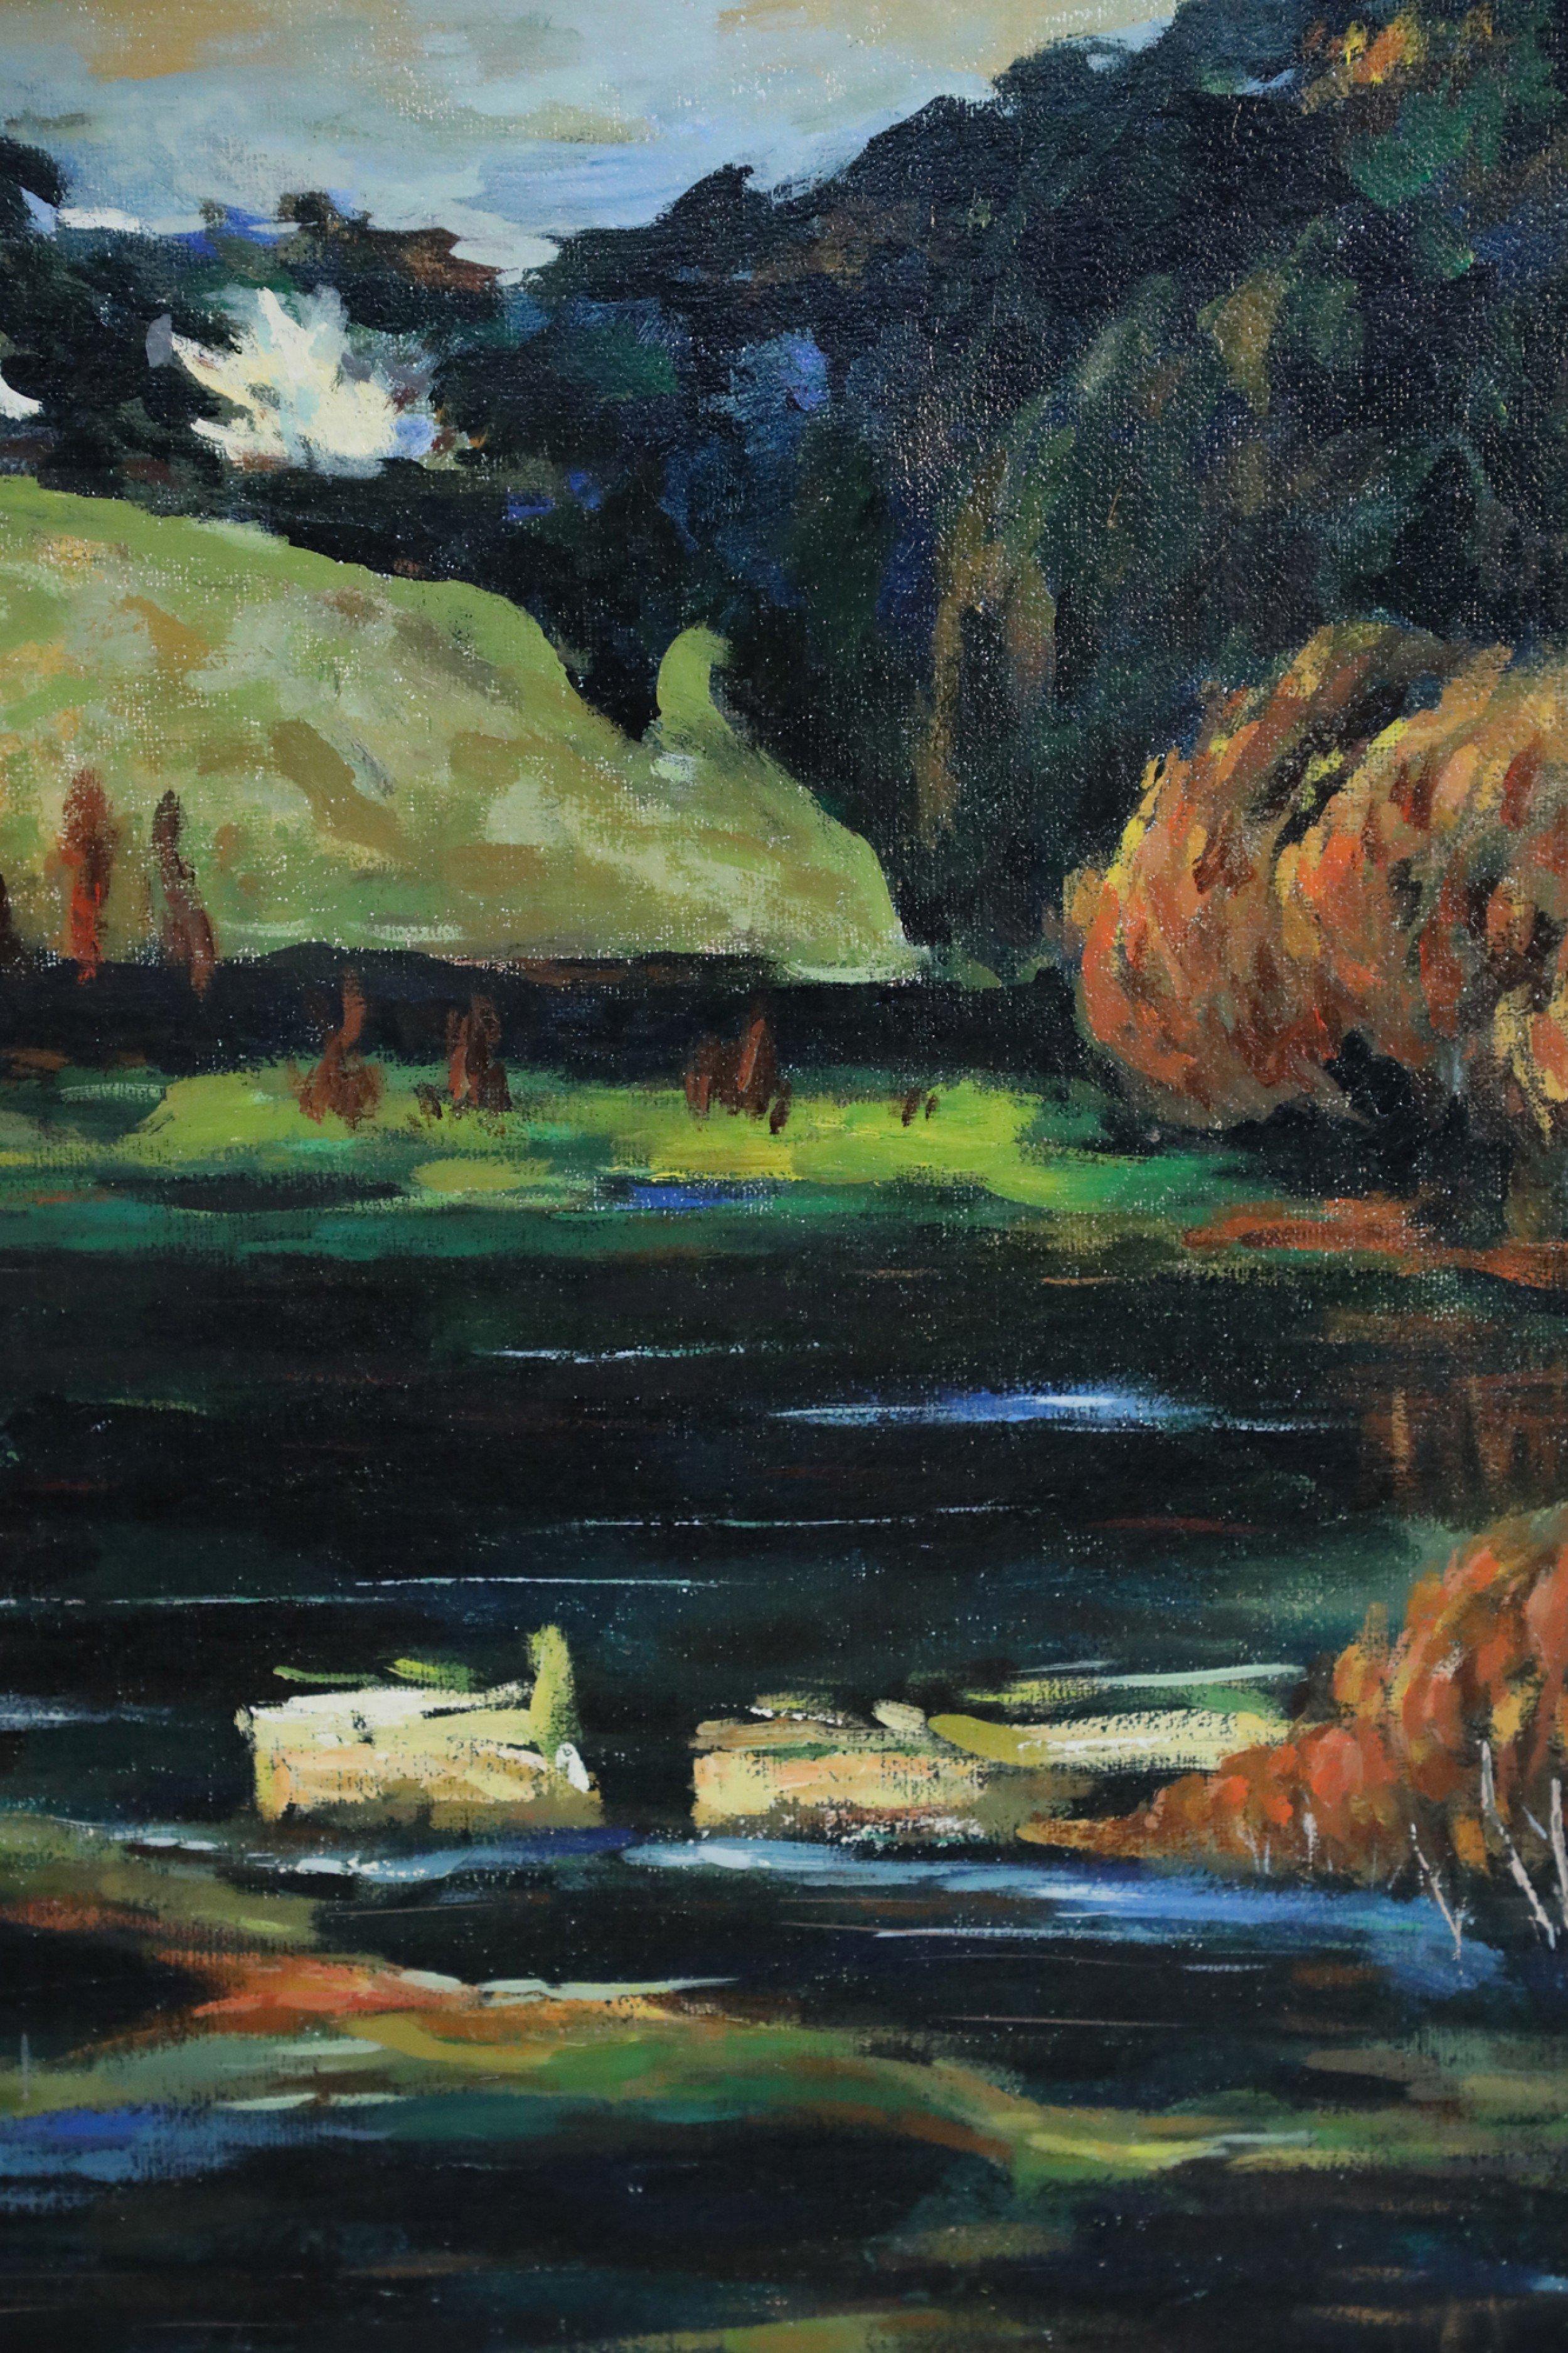 Peinture acrylique de paysage du milieu du siècle représentant un lac réfléchissant au premier plan, entouré de bâtiments en pierre blanche, avec une colline en arrière-plan entourée d'arbres d'automne, sur toile dans un cadre rectangulaire en bois